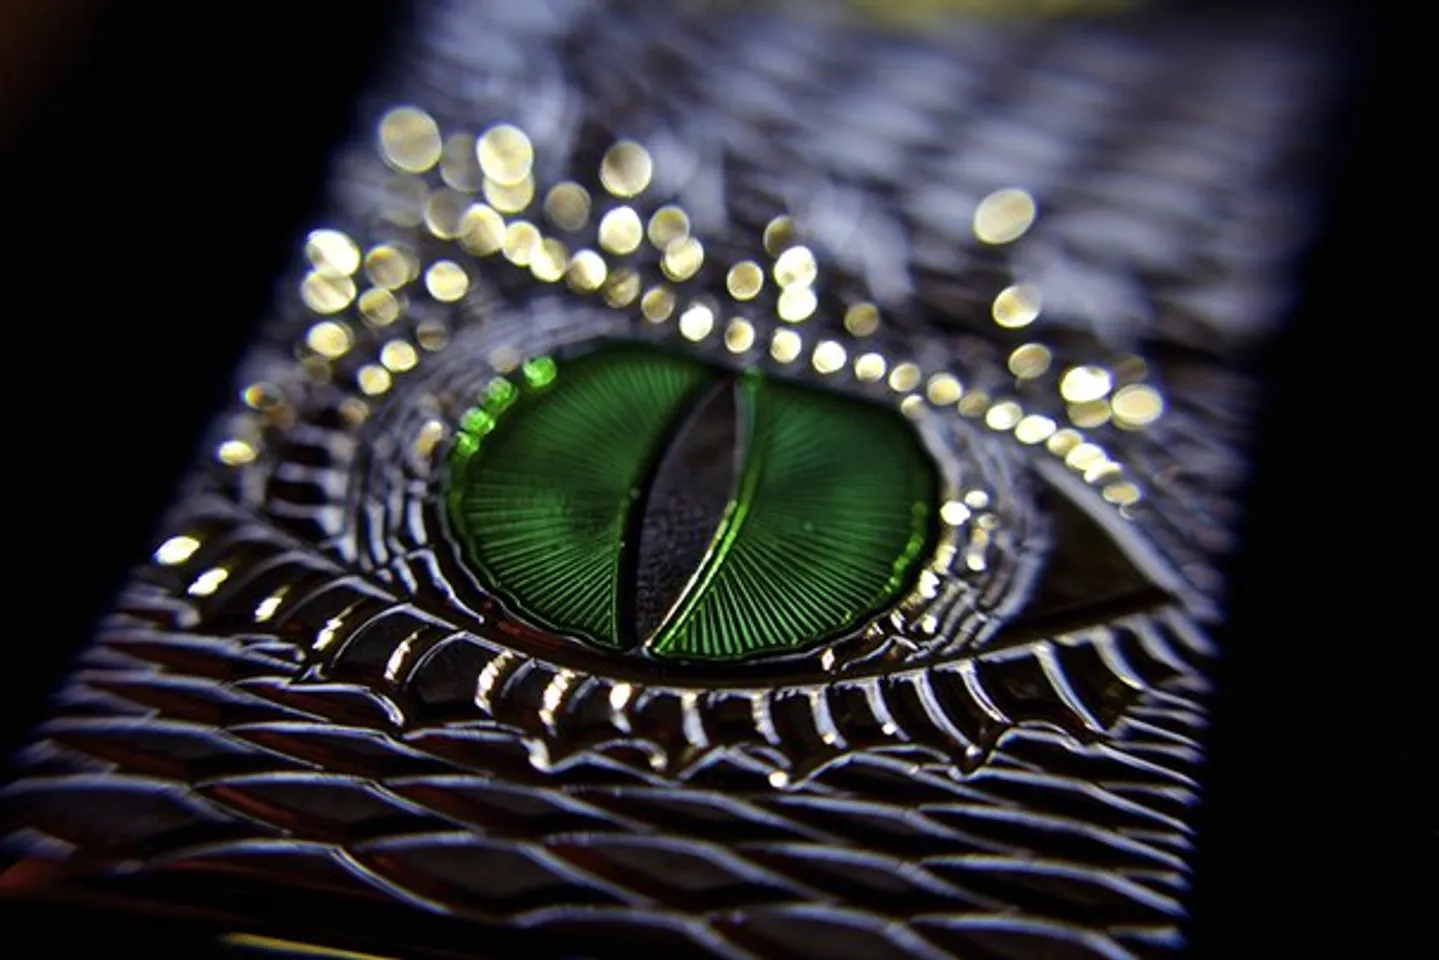 Vỏ của Zippo 28807 được đính ngọc lục bảo tượng trưng cho mắt rồng với màu xanh huyền bí